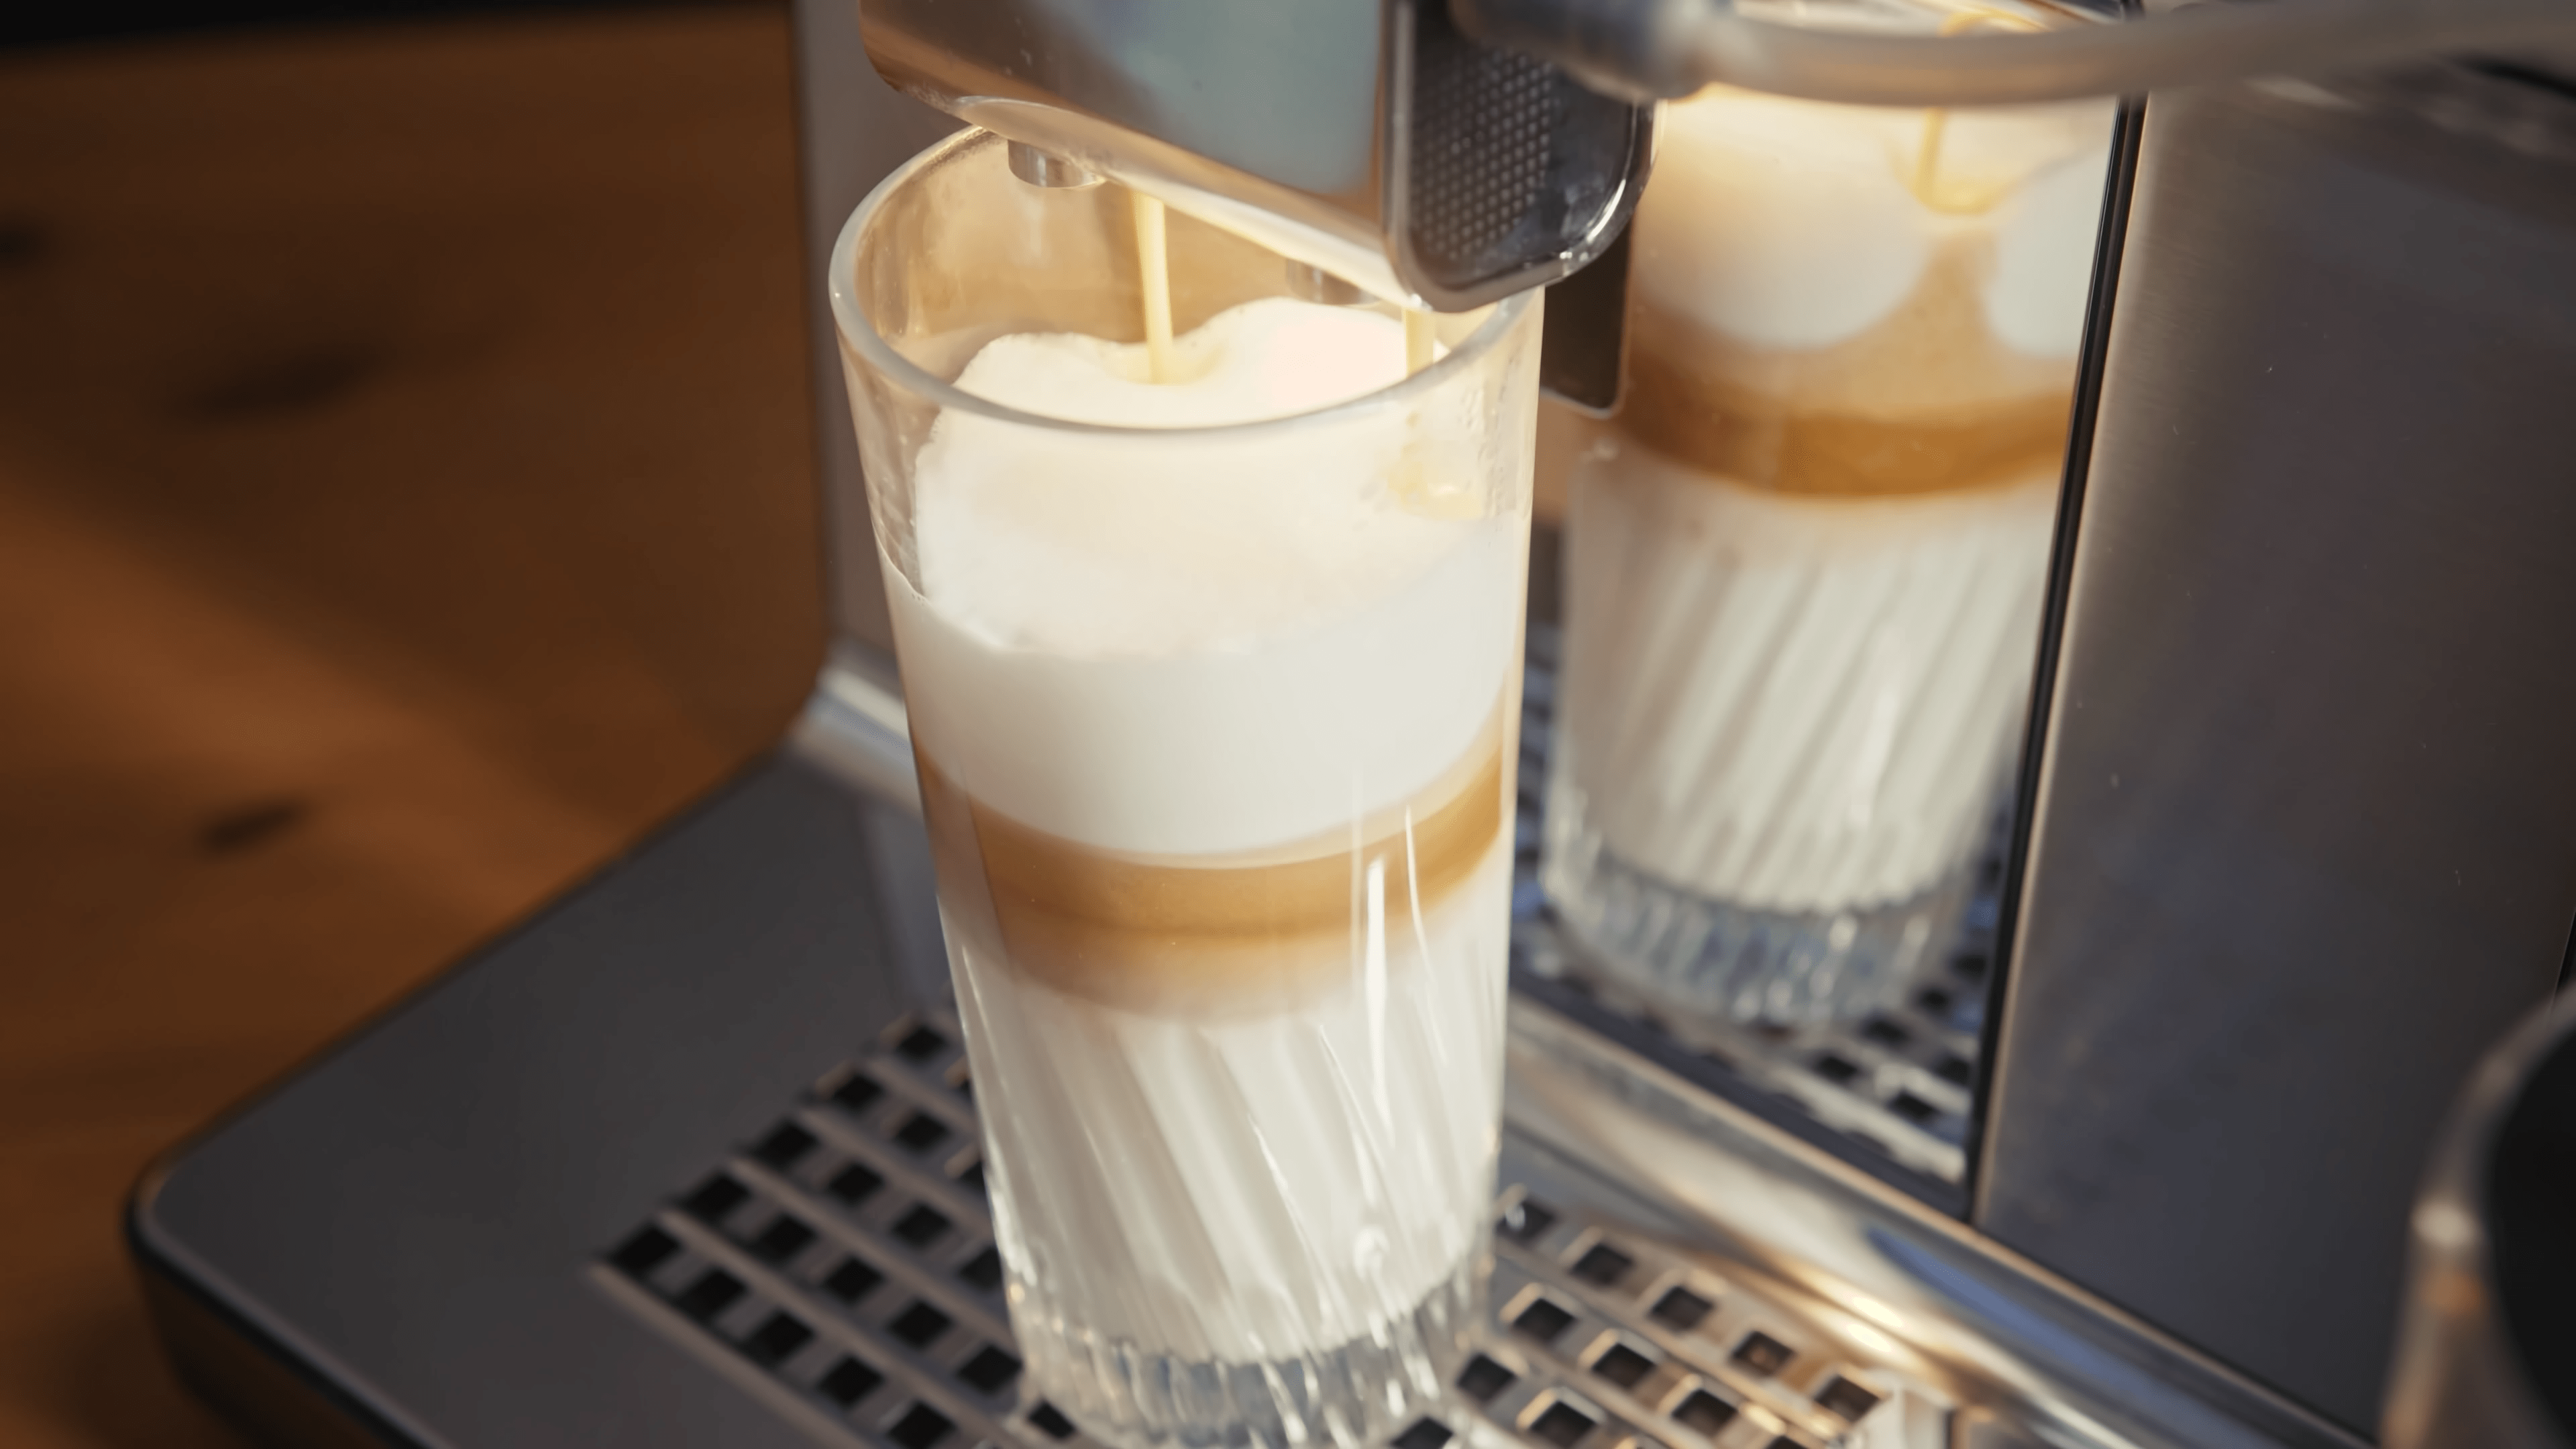 Szklanka latte macchiato przygotowywanego w ekspresie do kawy.